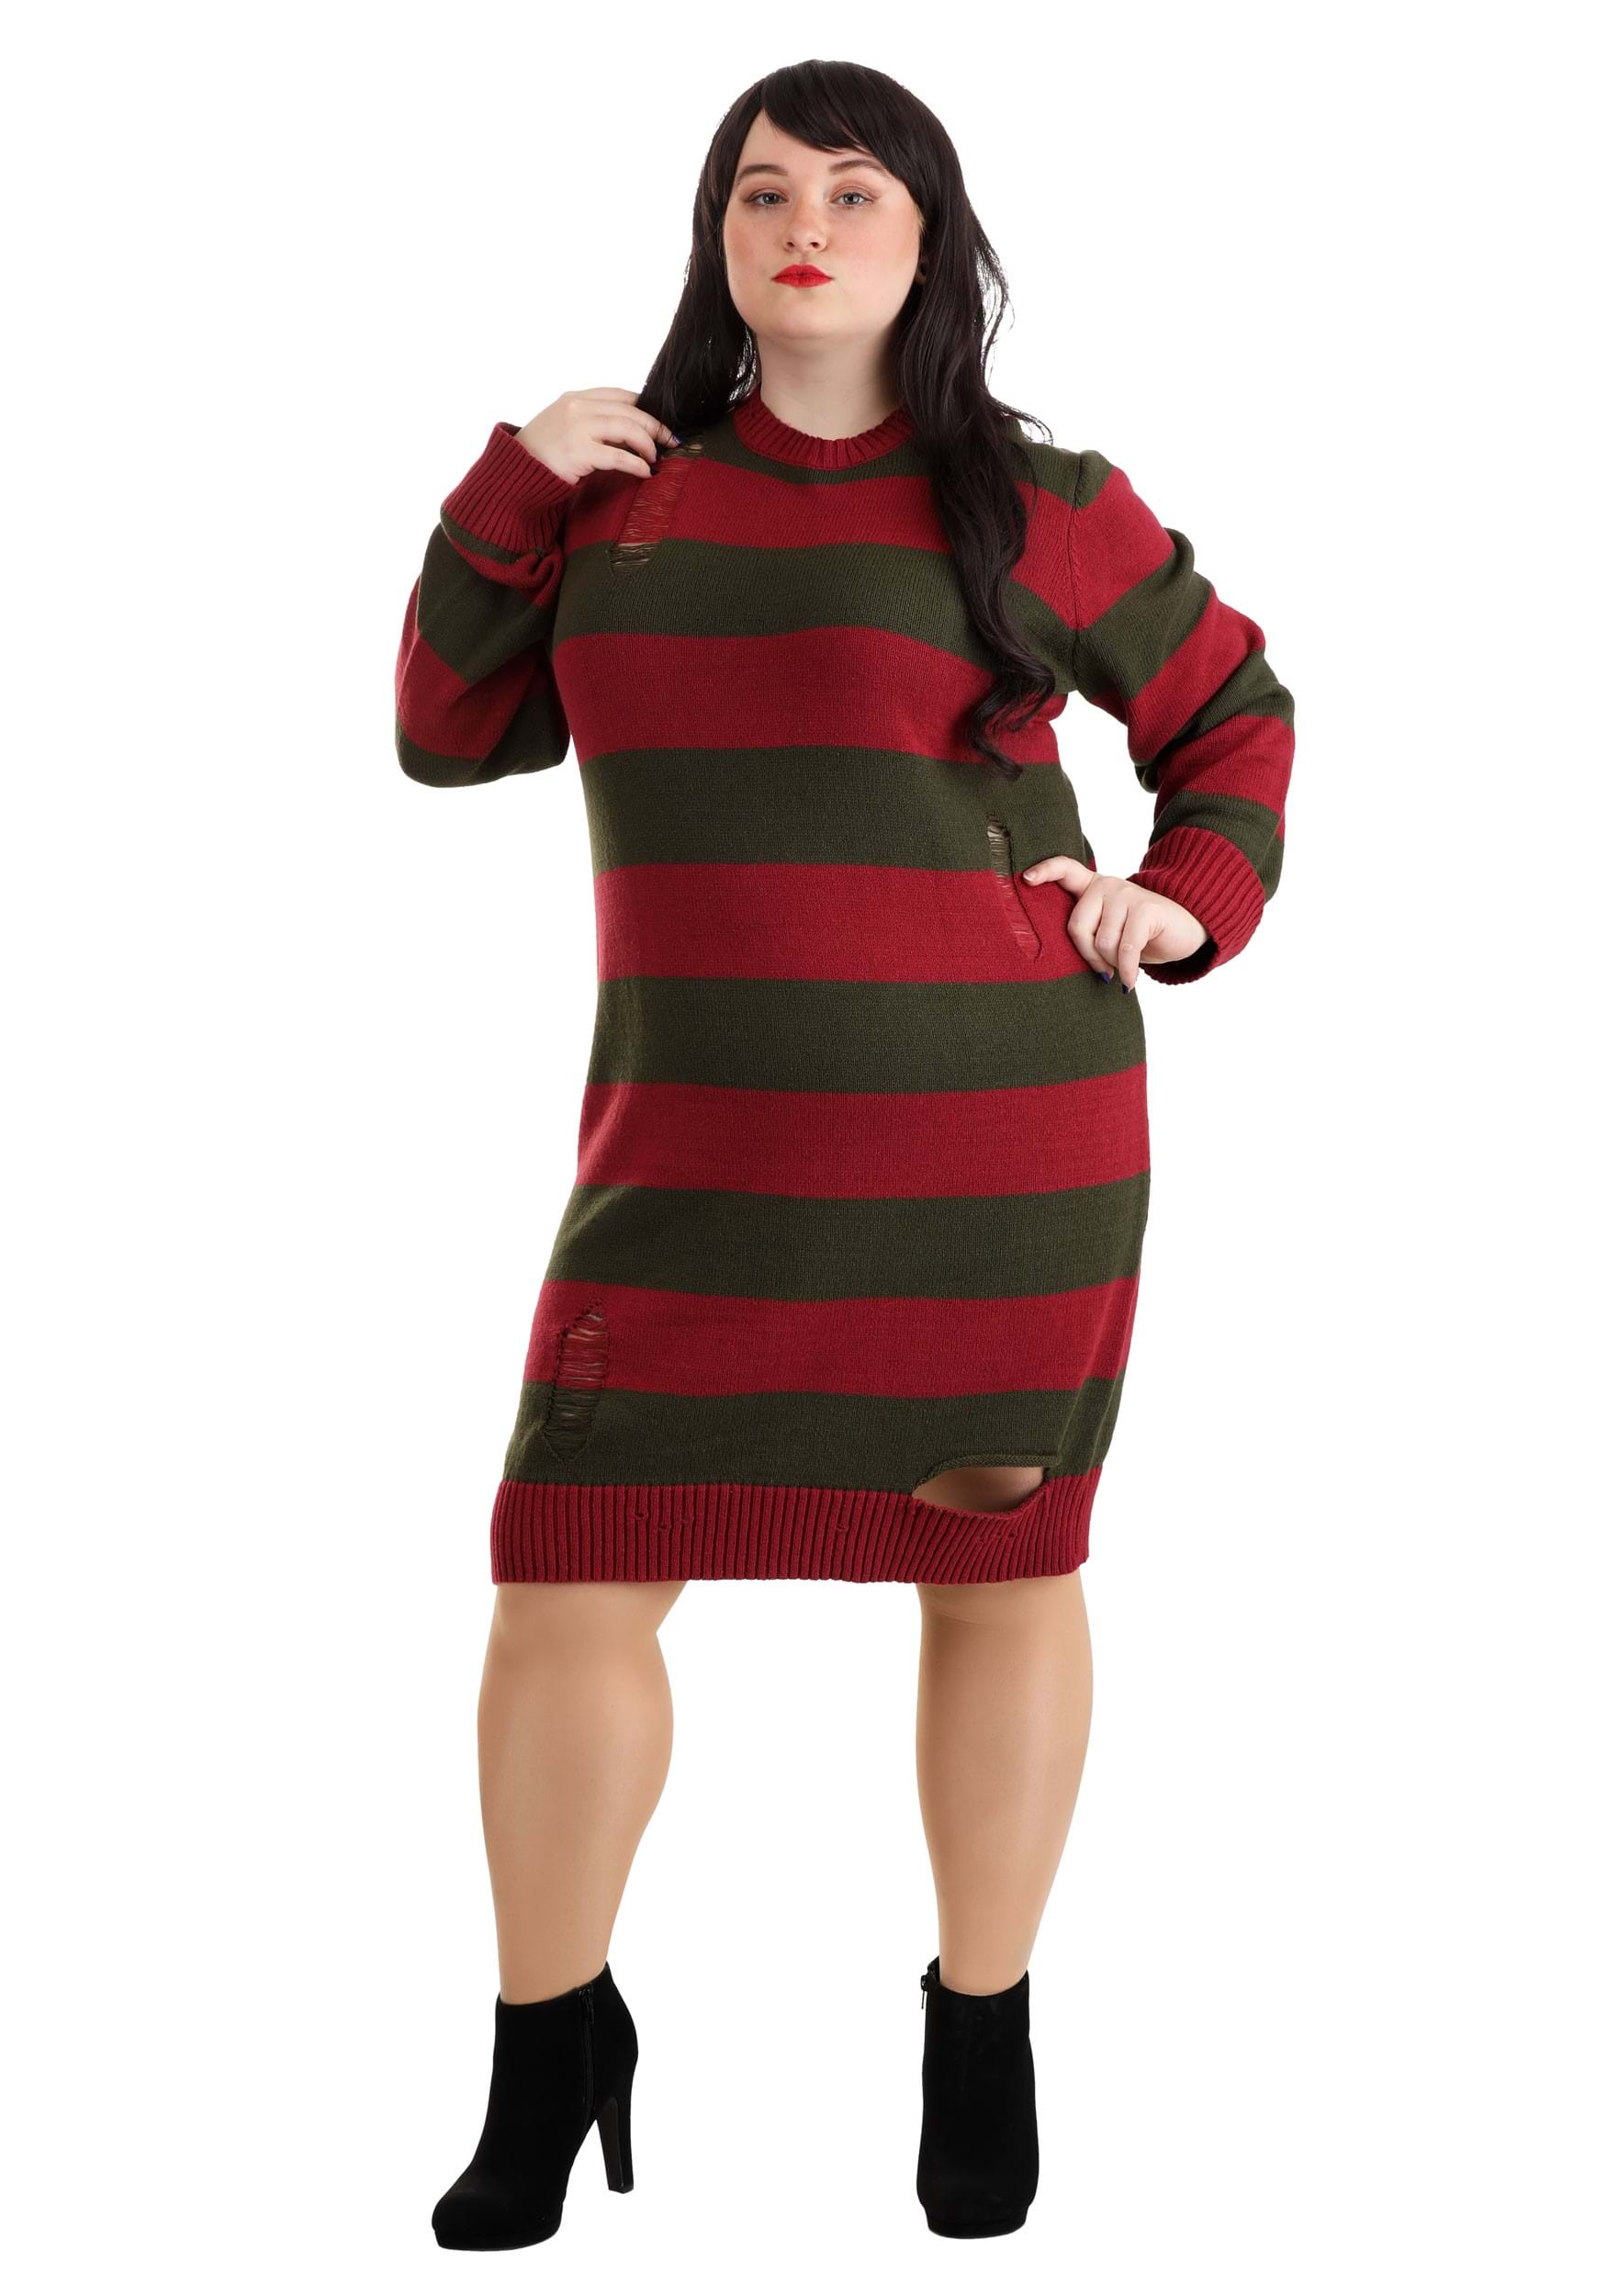 Freddy Krueger Plus Size Fancy Dress Costume Dress For Adults , Horror Movie Fancy Dress Costumes